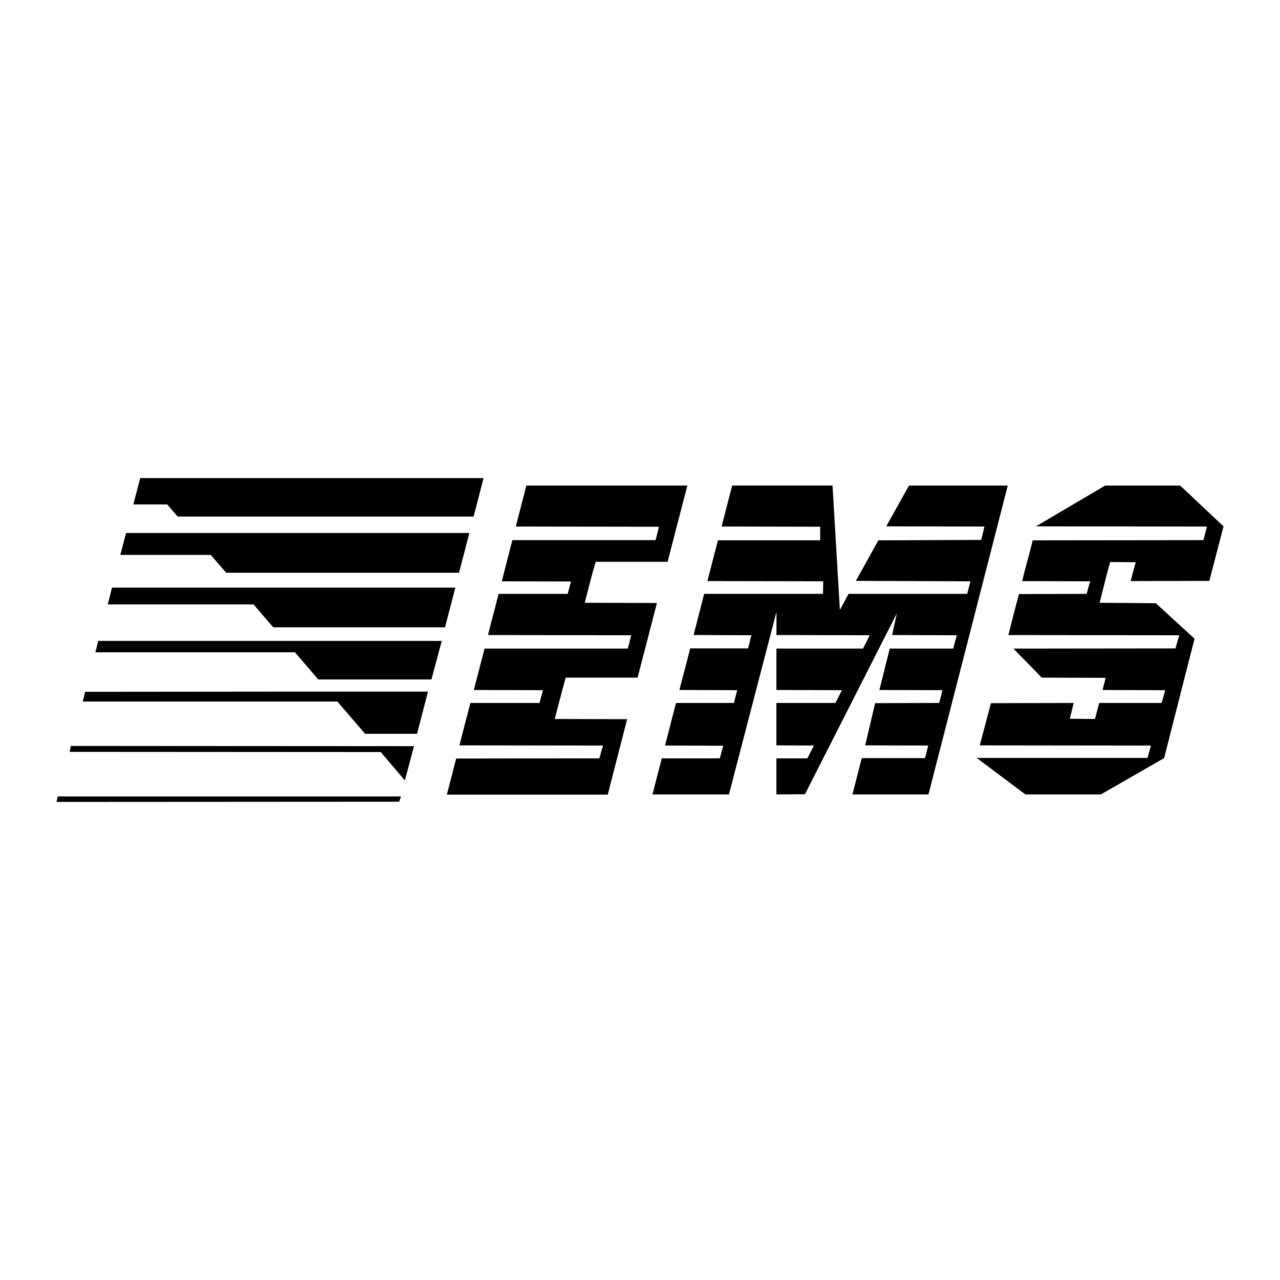 EMSA Logo PNG Transparent & SVG Vector - Freebie Supply